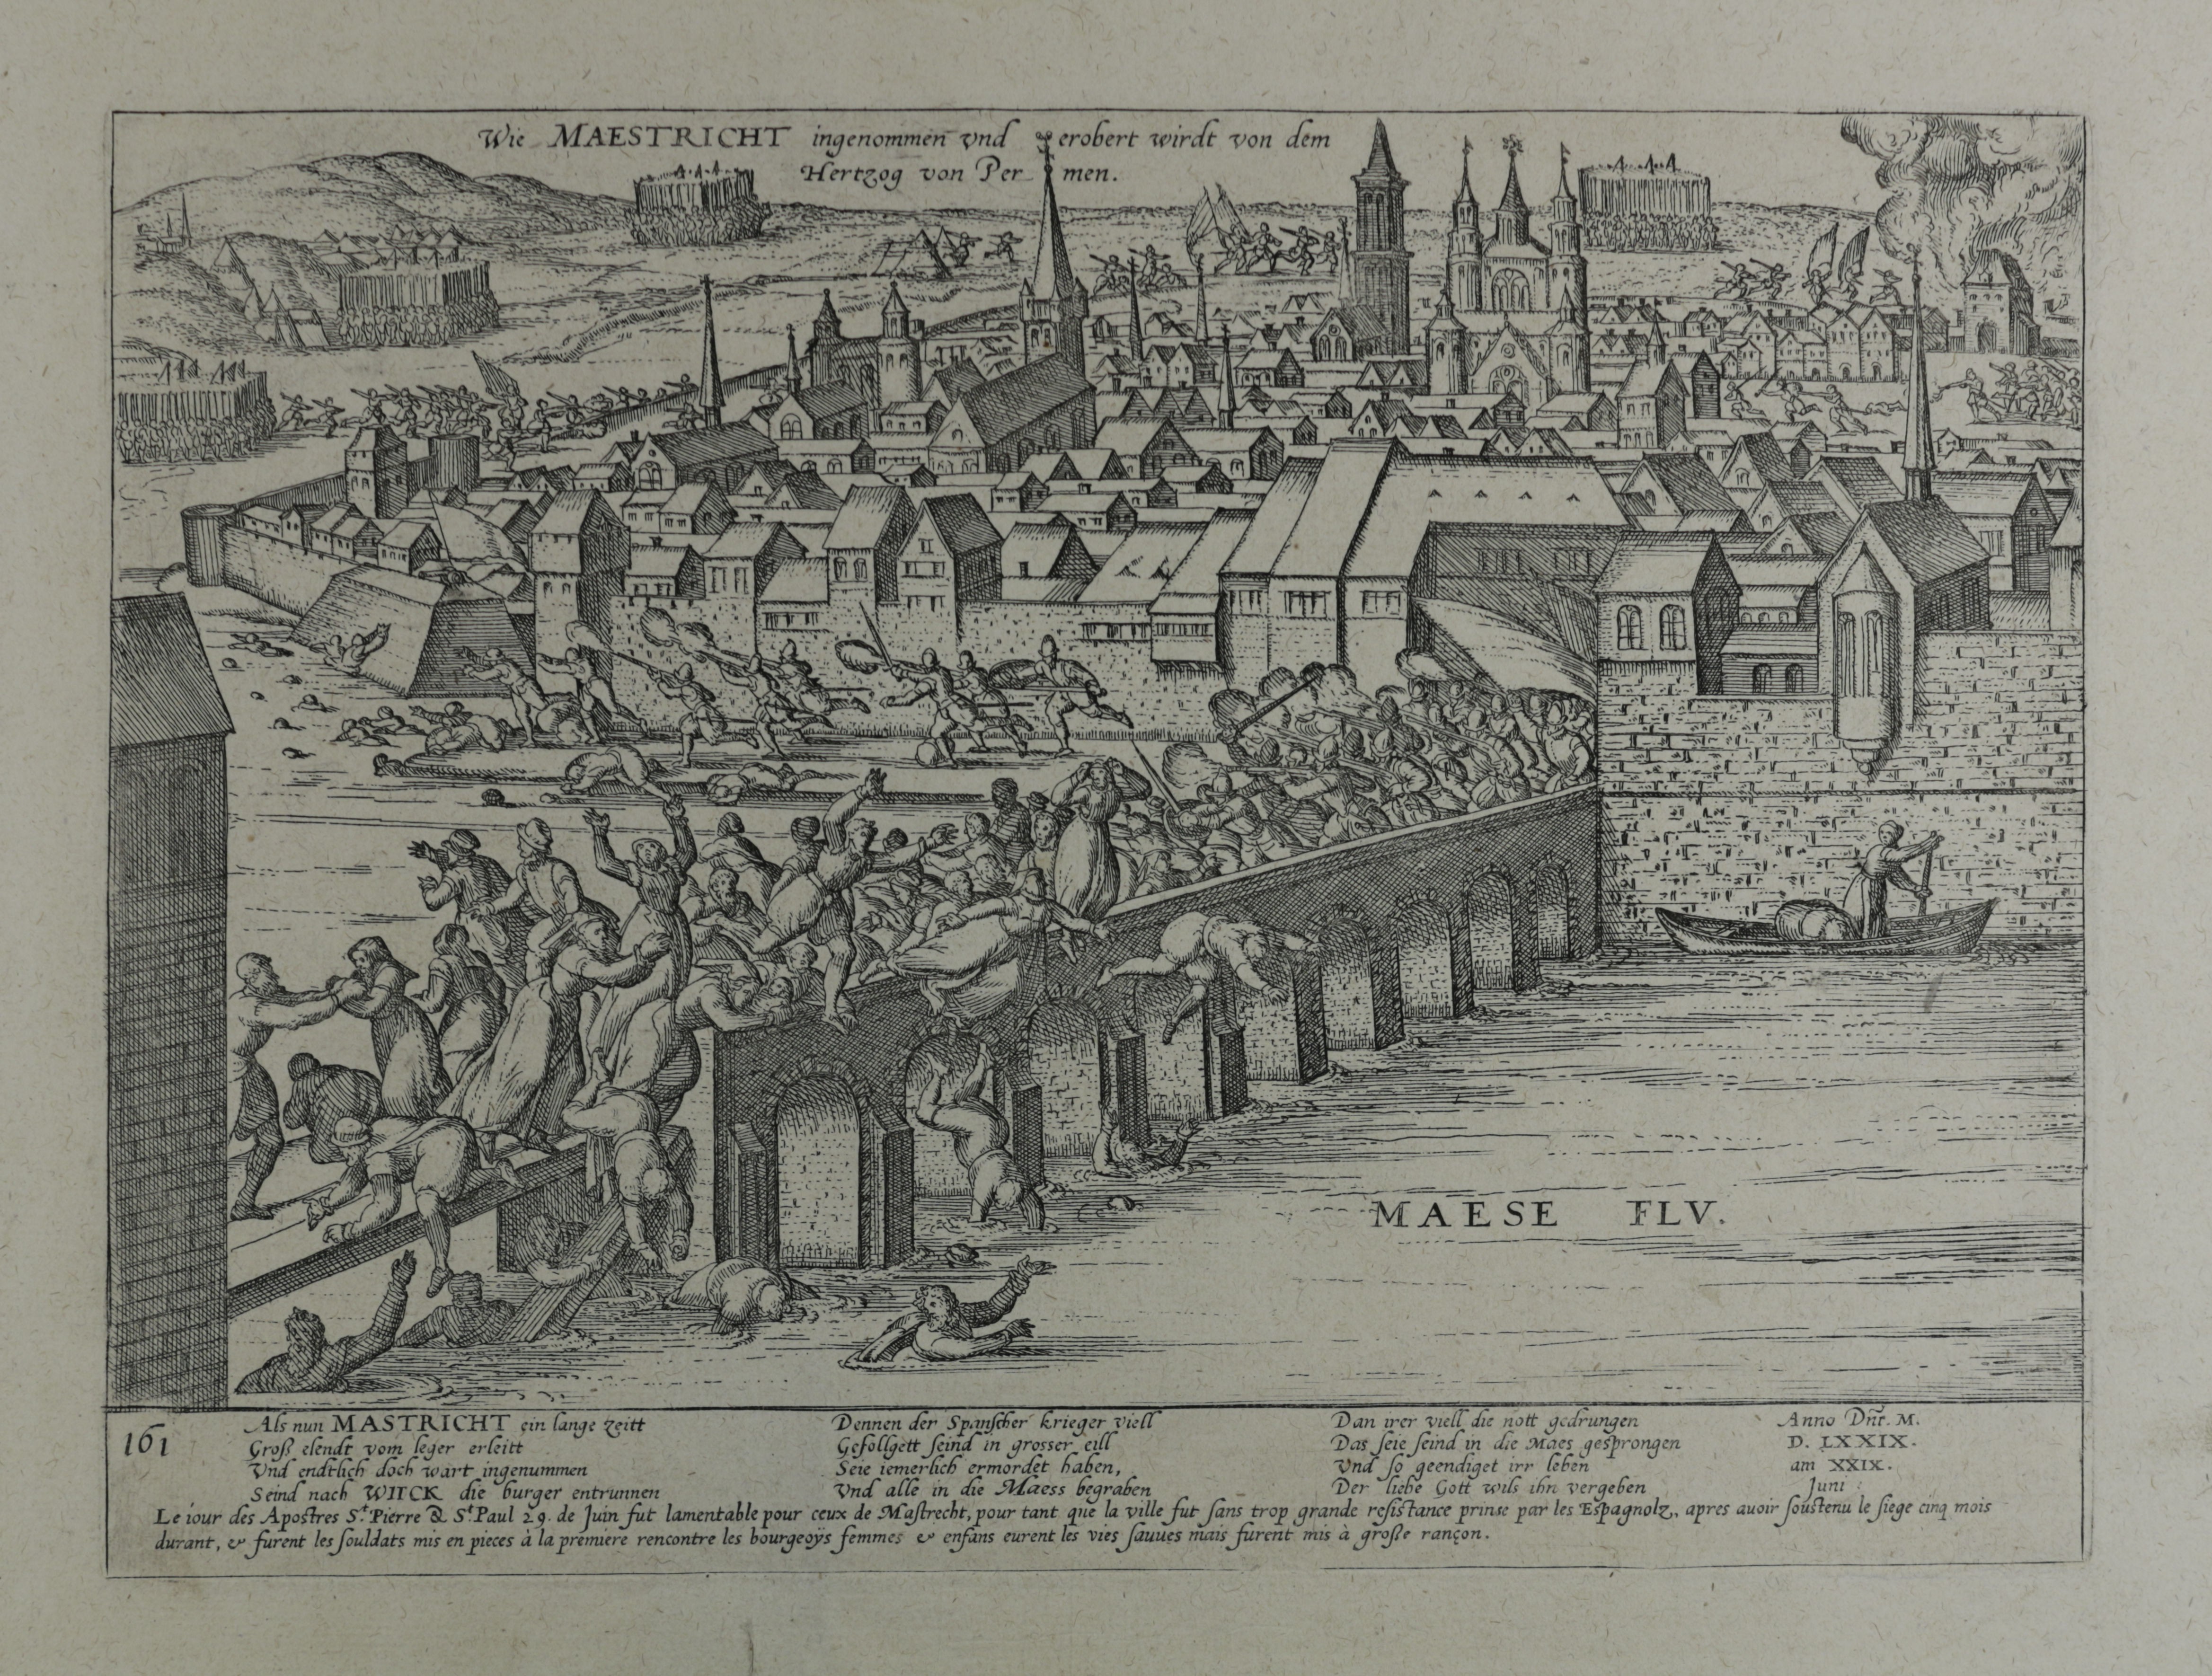 Kupferstich zur Eroberung von Maastricht, Juni 1579 (Städtisches Museum Schloss Rheydt CC BY)